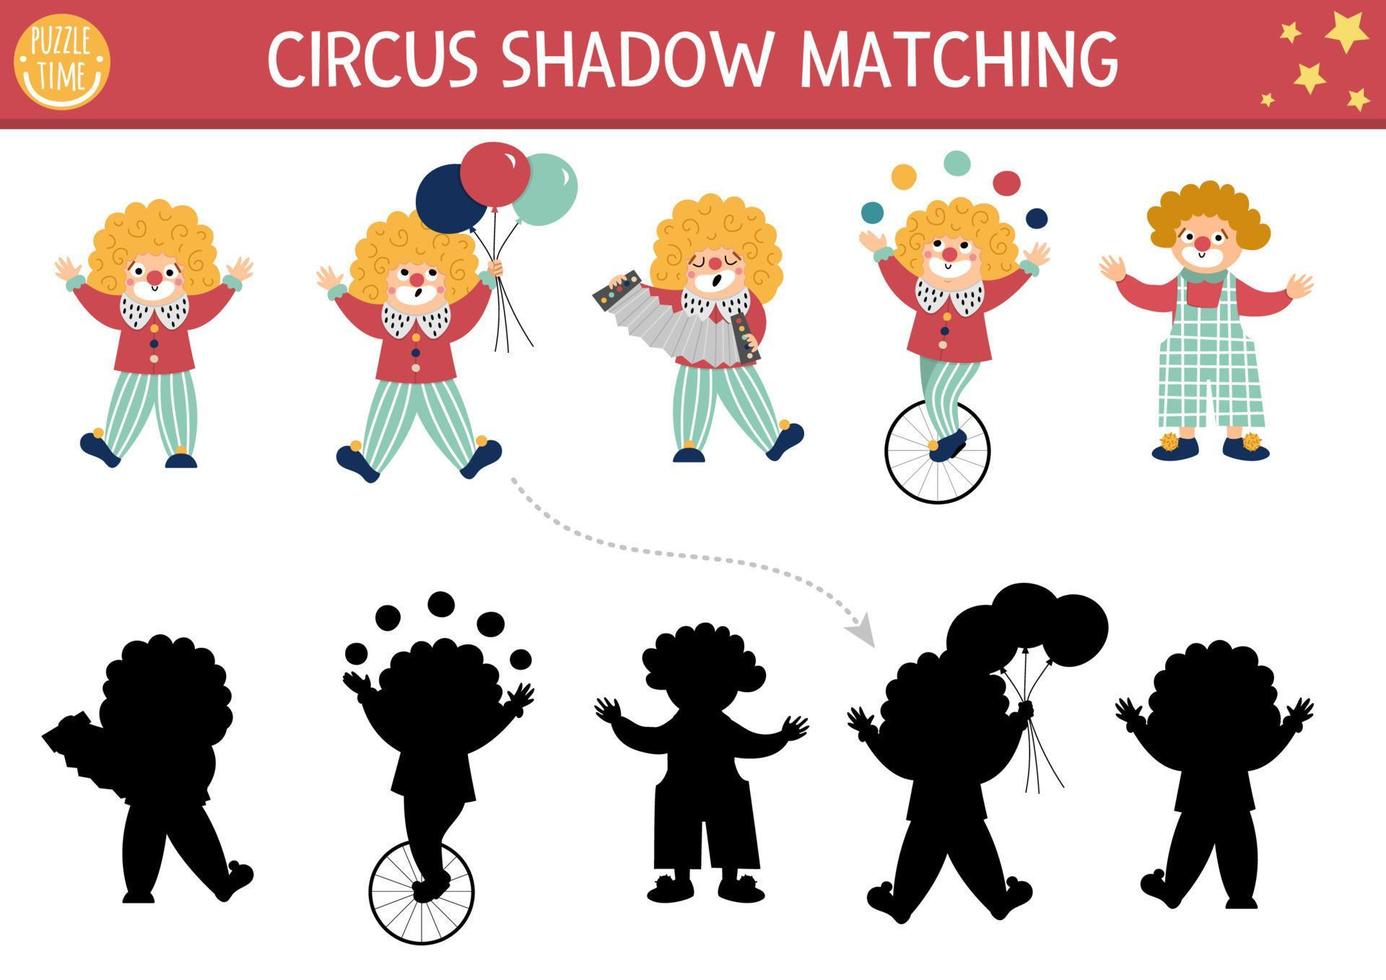 Zirkus-Schatten-Matching-Aktivität mit niedlichen Clowns. Unterhaltungsshow-Puzzle mit lustigen Charakteren. Finden Sie das richtige druckbare Arbeitsblatt oder Spiel. Unterhaltungsfestivalseite für Kinder vektor